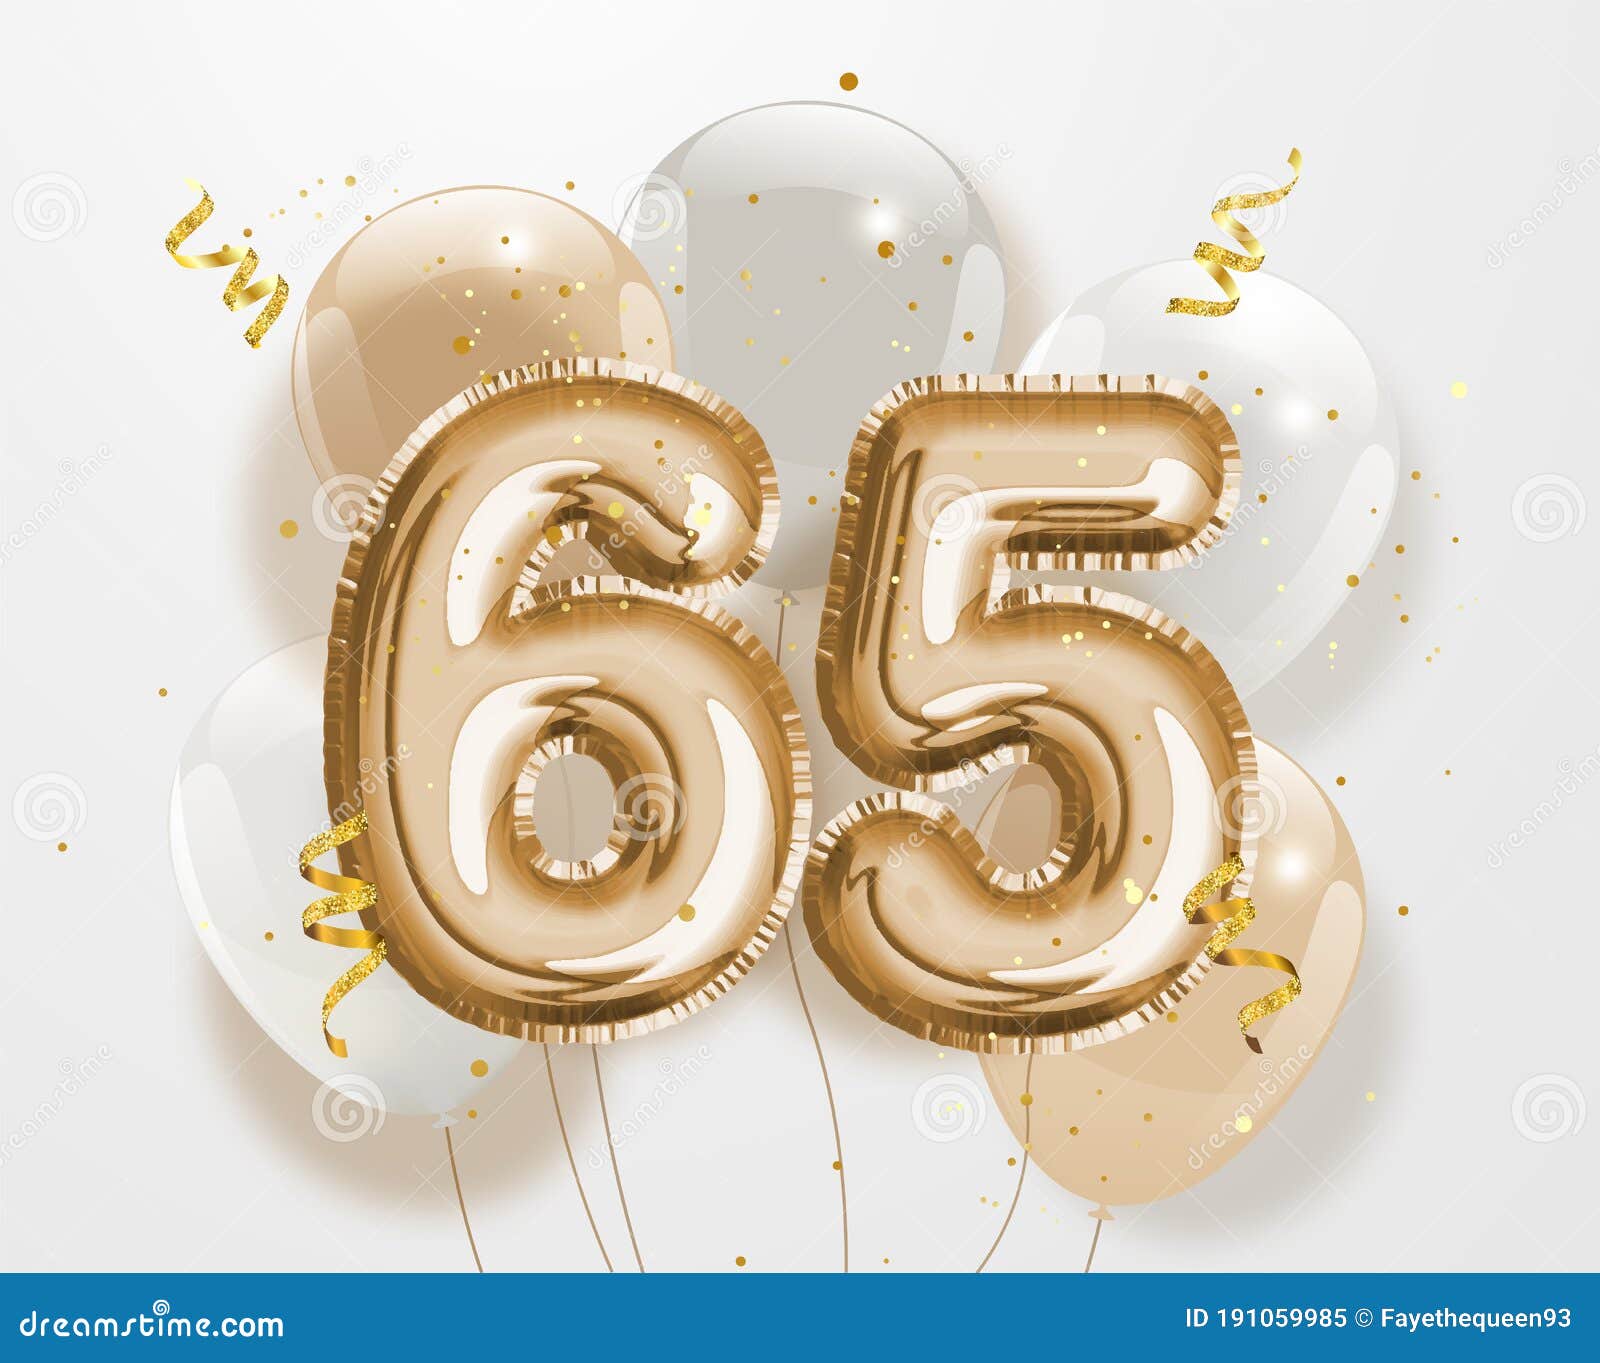 Nền sinh nhật lần thứ 65 với bong bóng vàng sẽ khiến cho một ngày sinh nhật trở nên đặc biệt hơn bao giờ hết. Hãy cùng xem hình ảnh và chúc mừng sinh nhật lần thứ 65 của bạn!